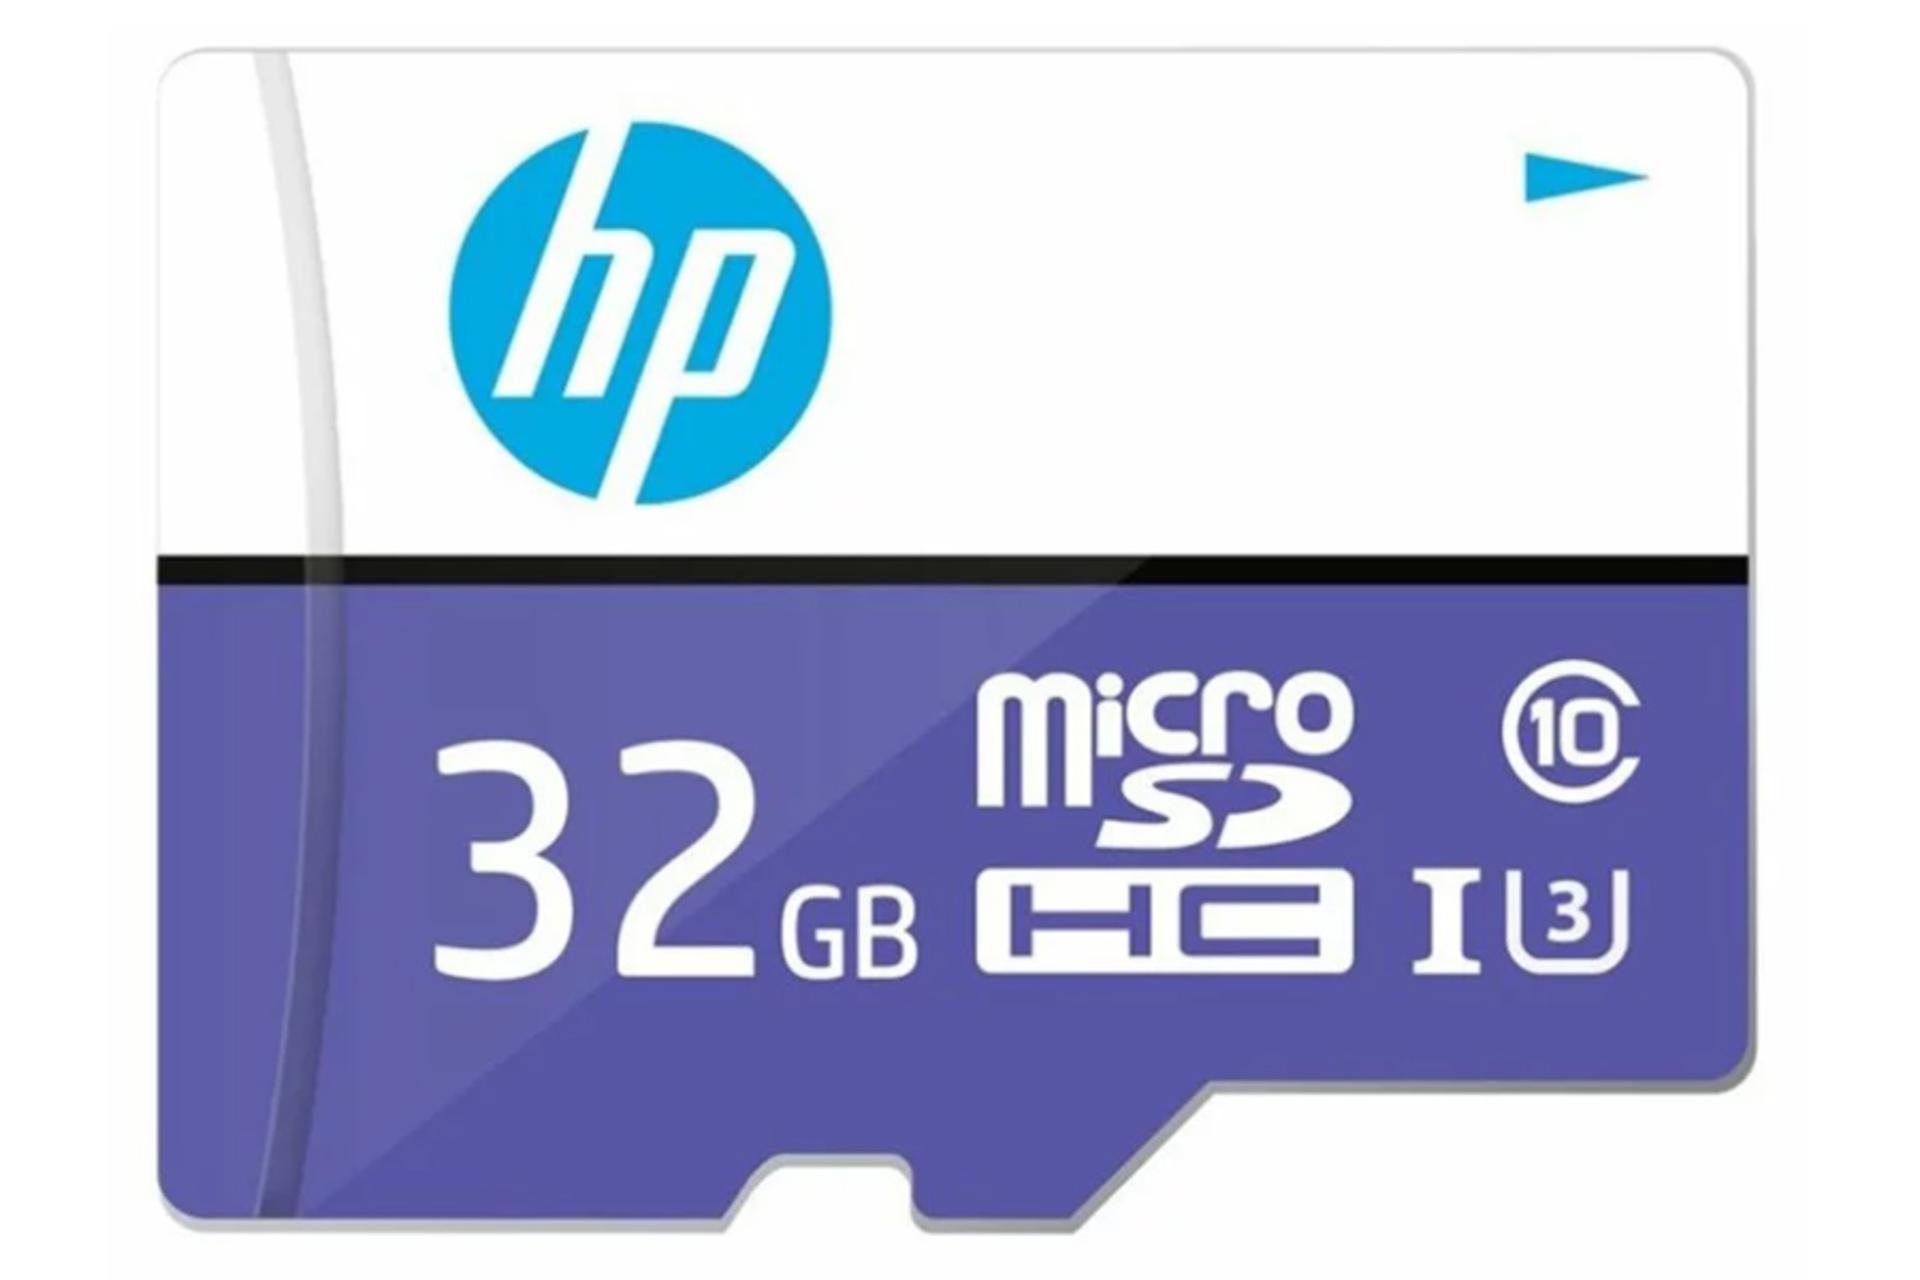 کارت حافظه اچ پی microSDHC با ظرفیت 32 گیگابایت مدل Mi230 روبرو